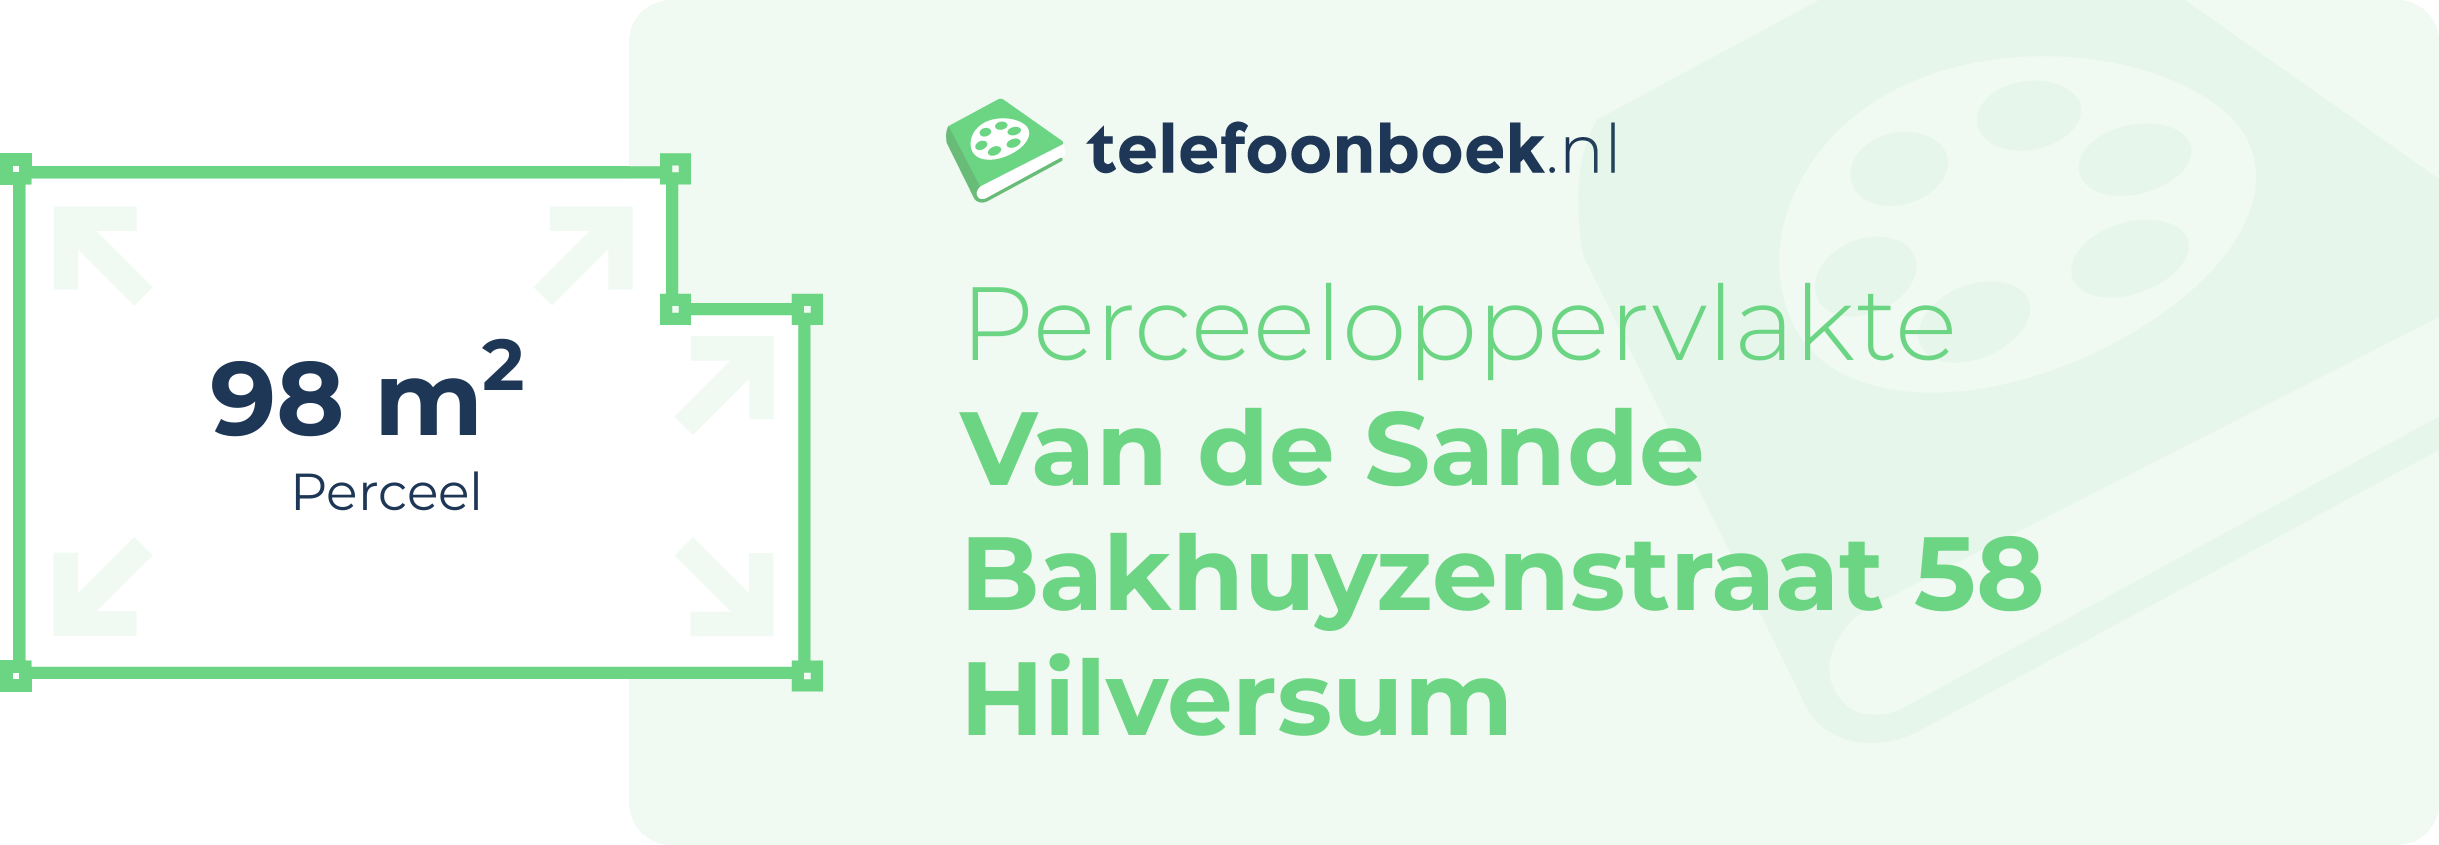 Perceeloppervlakte Van De Sande Bakhuyzenstraat 58 Hilversum